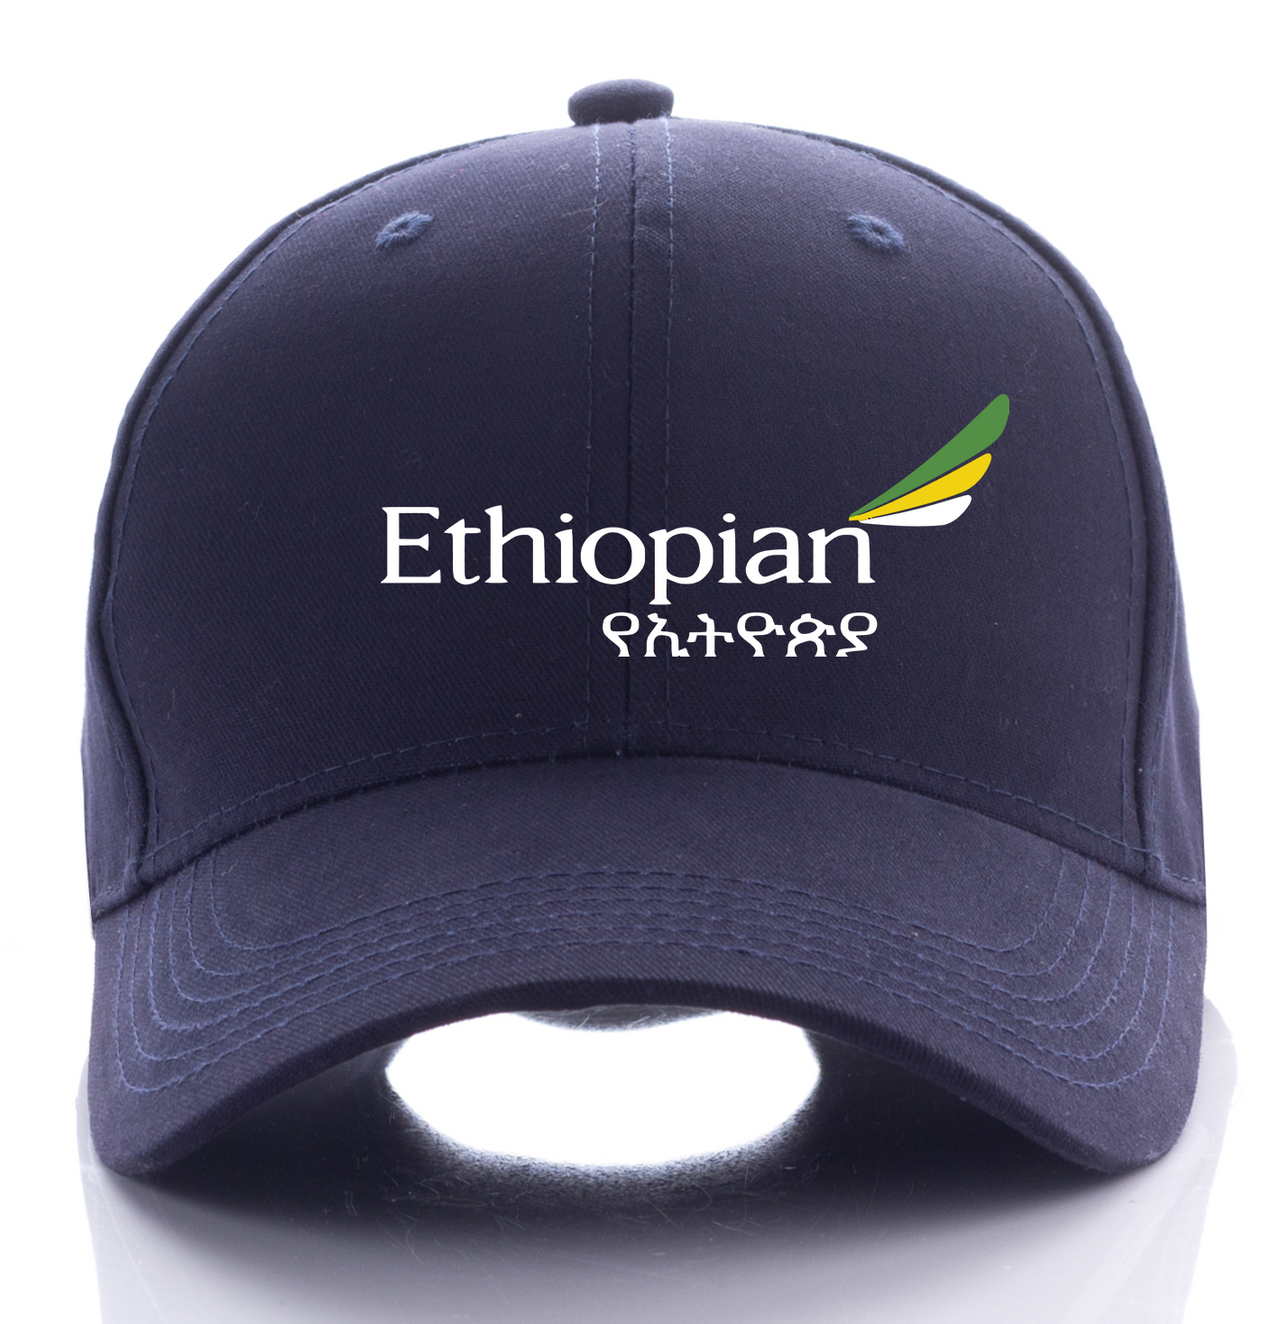 ETHIOPIAN AIRLINE DESIGNED CAP